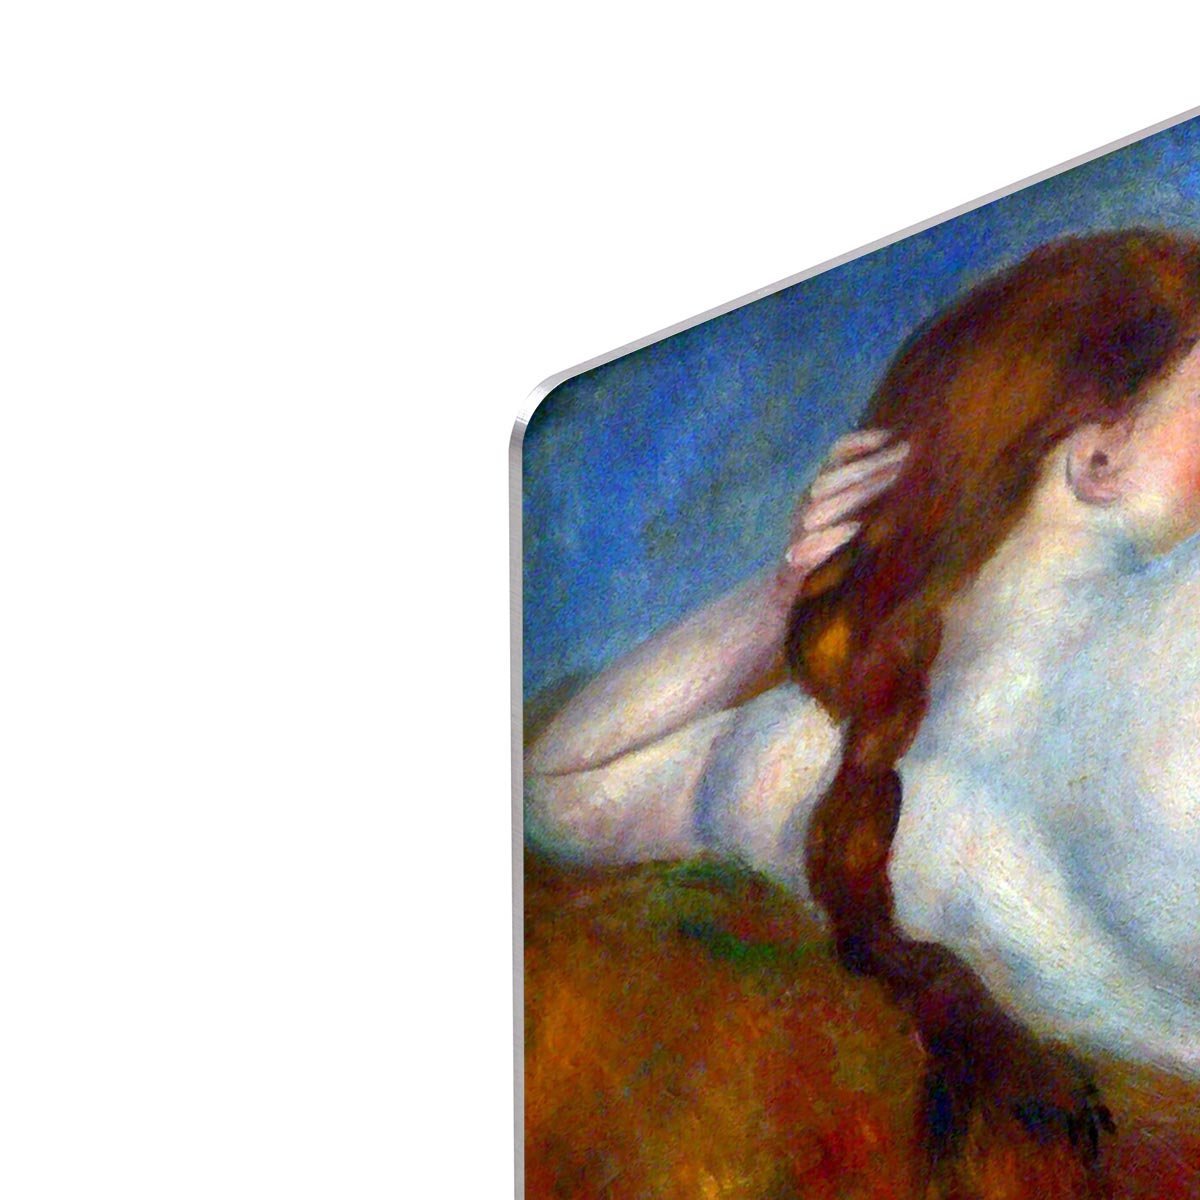 Reclining nude by Renoir HD Metal Print